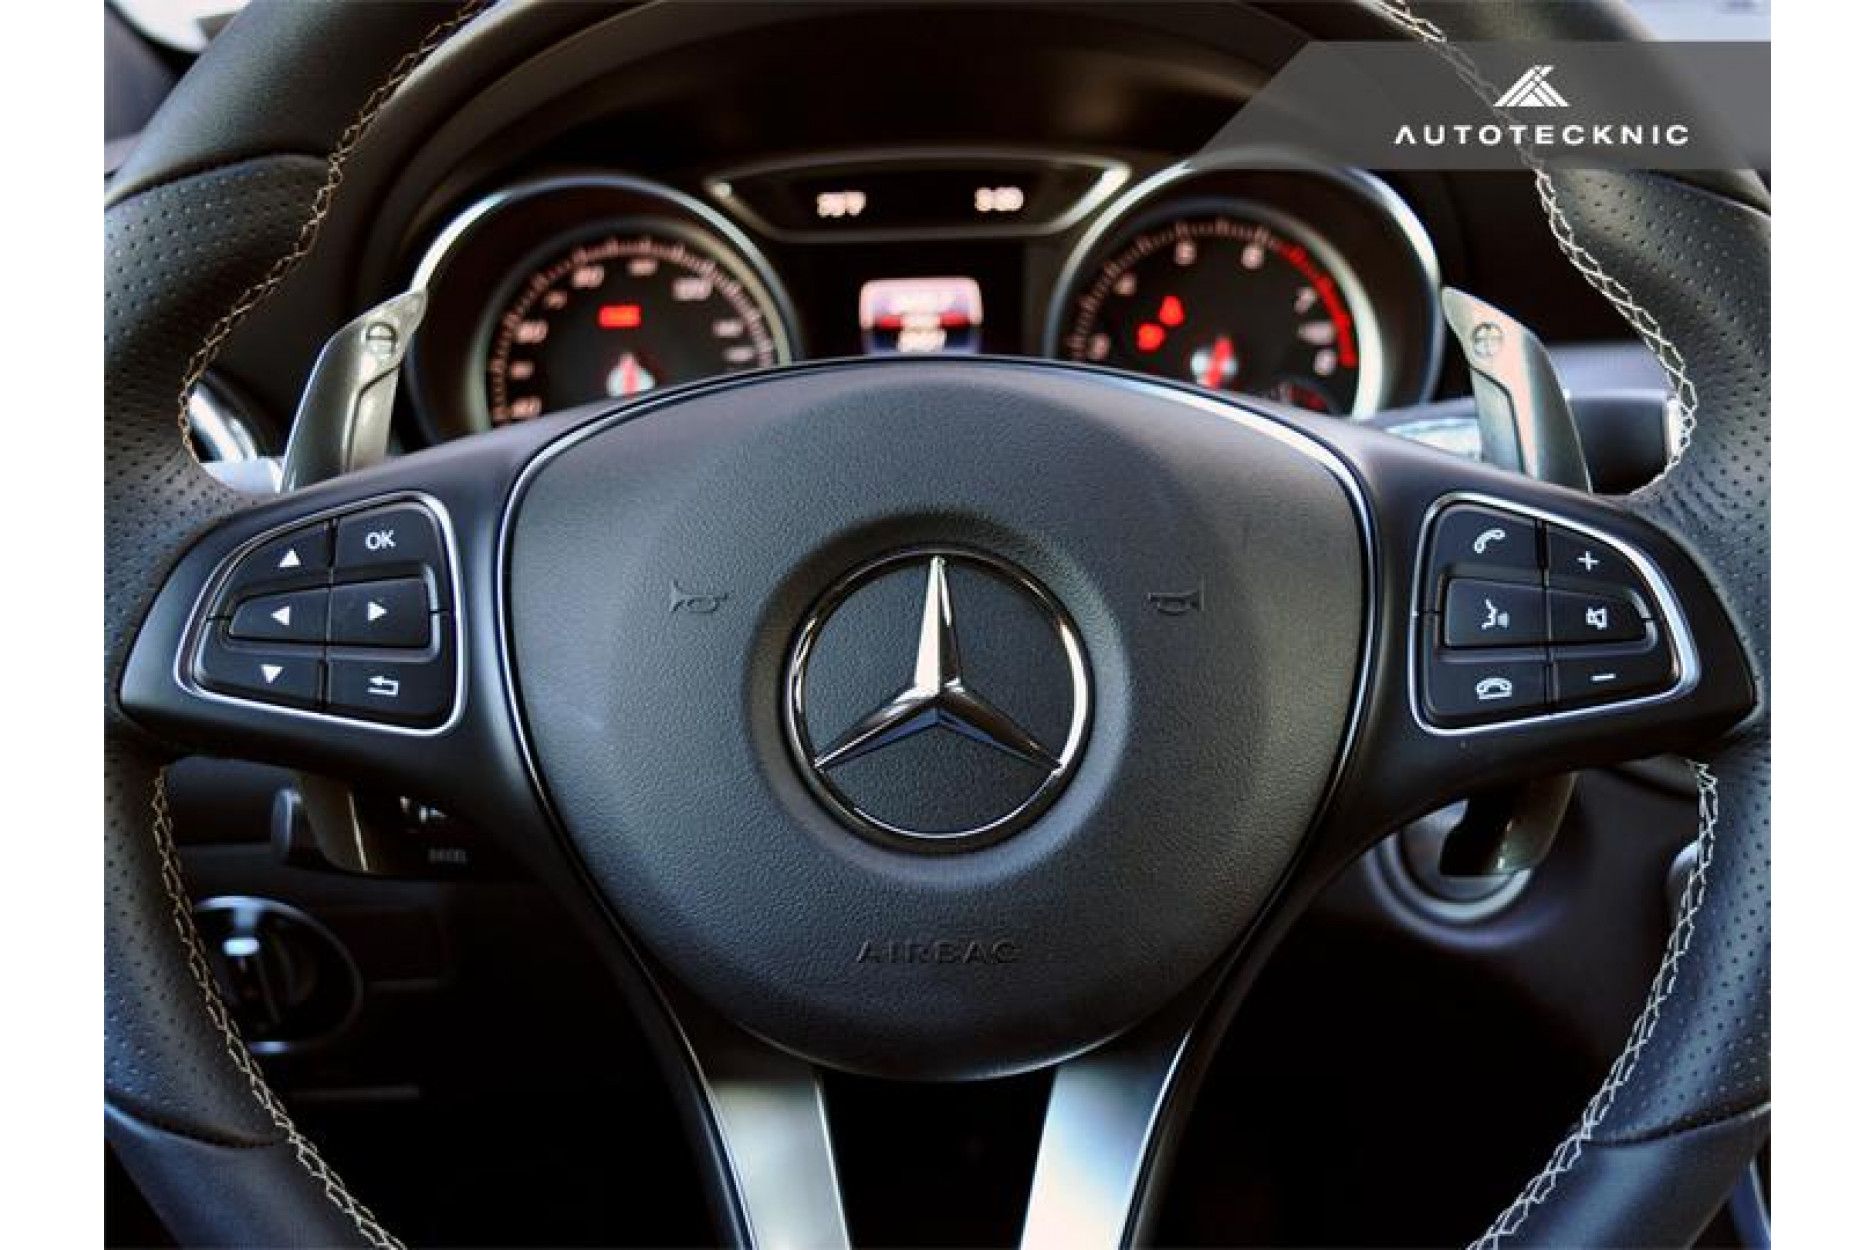 Autotecknic Aluminium Schaltwippen für Mercedes Benz kein AMG Stealth Black  - online kaufen bei CFD